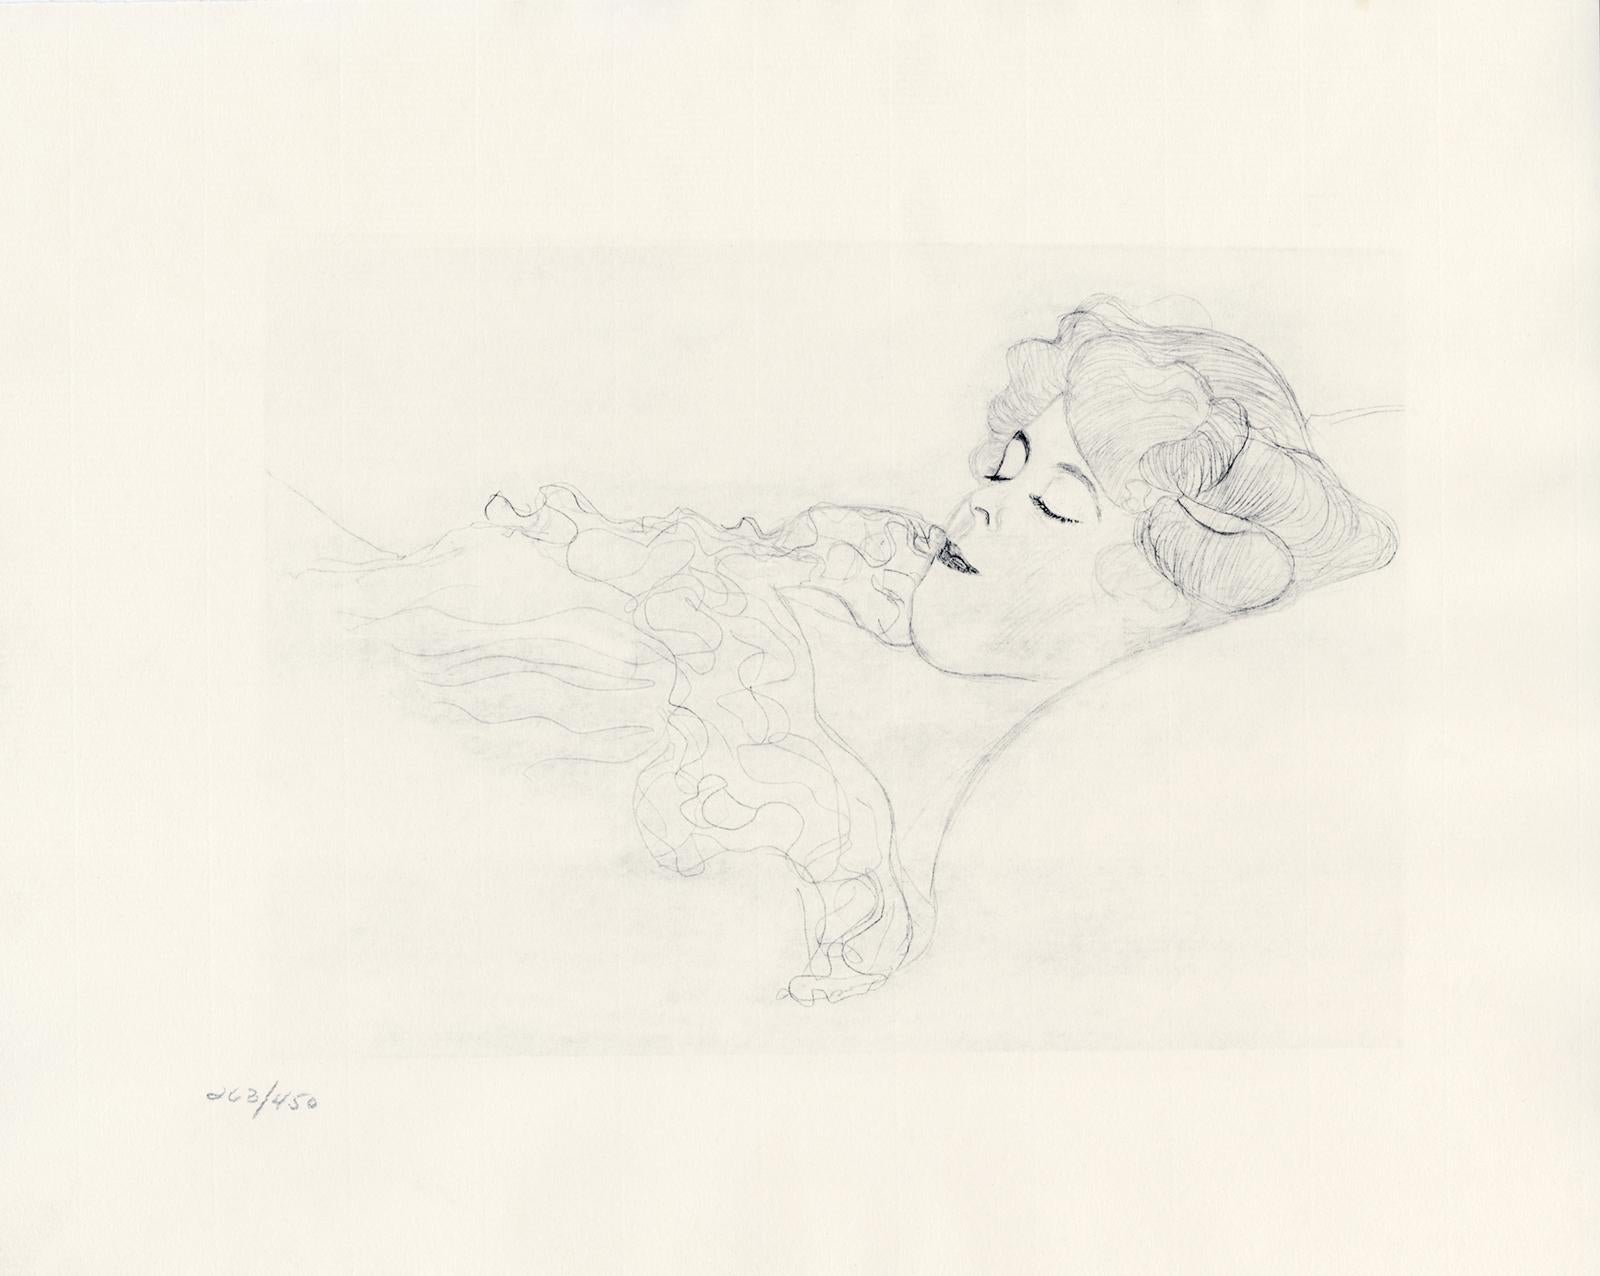 Blatt 1 aus Gustav Klimts Mappe "Dialoge der Kurtisanen" von 1907, bestehend aus 15 Lichtdrucken auf cremefarbenem Japonpapier. Die Zeichnungen in diesem Folianten gelten als Studien für Klimts bekannte Wasserschlangenbilder. 

Dieser Druck stammt